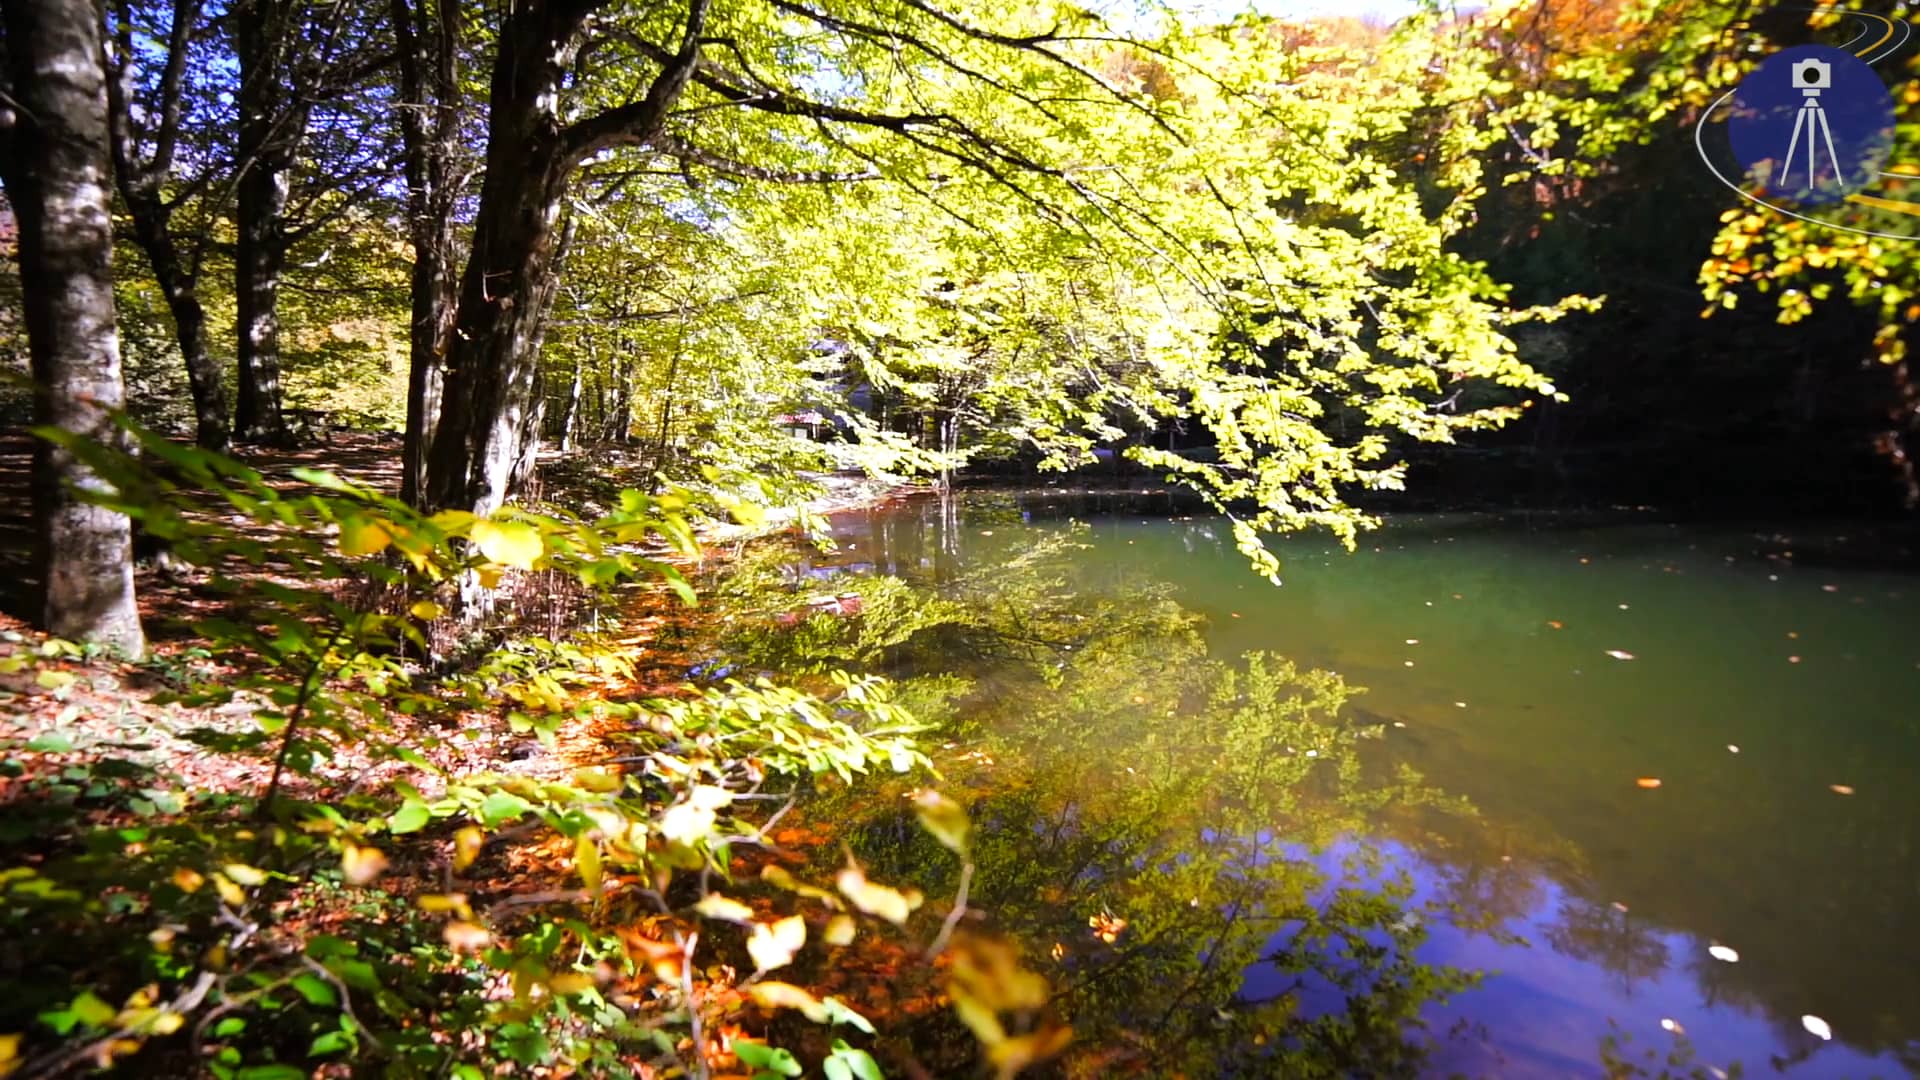 Autumn Reflections on Vimeo